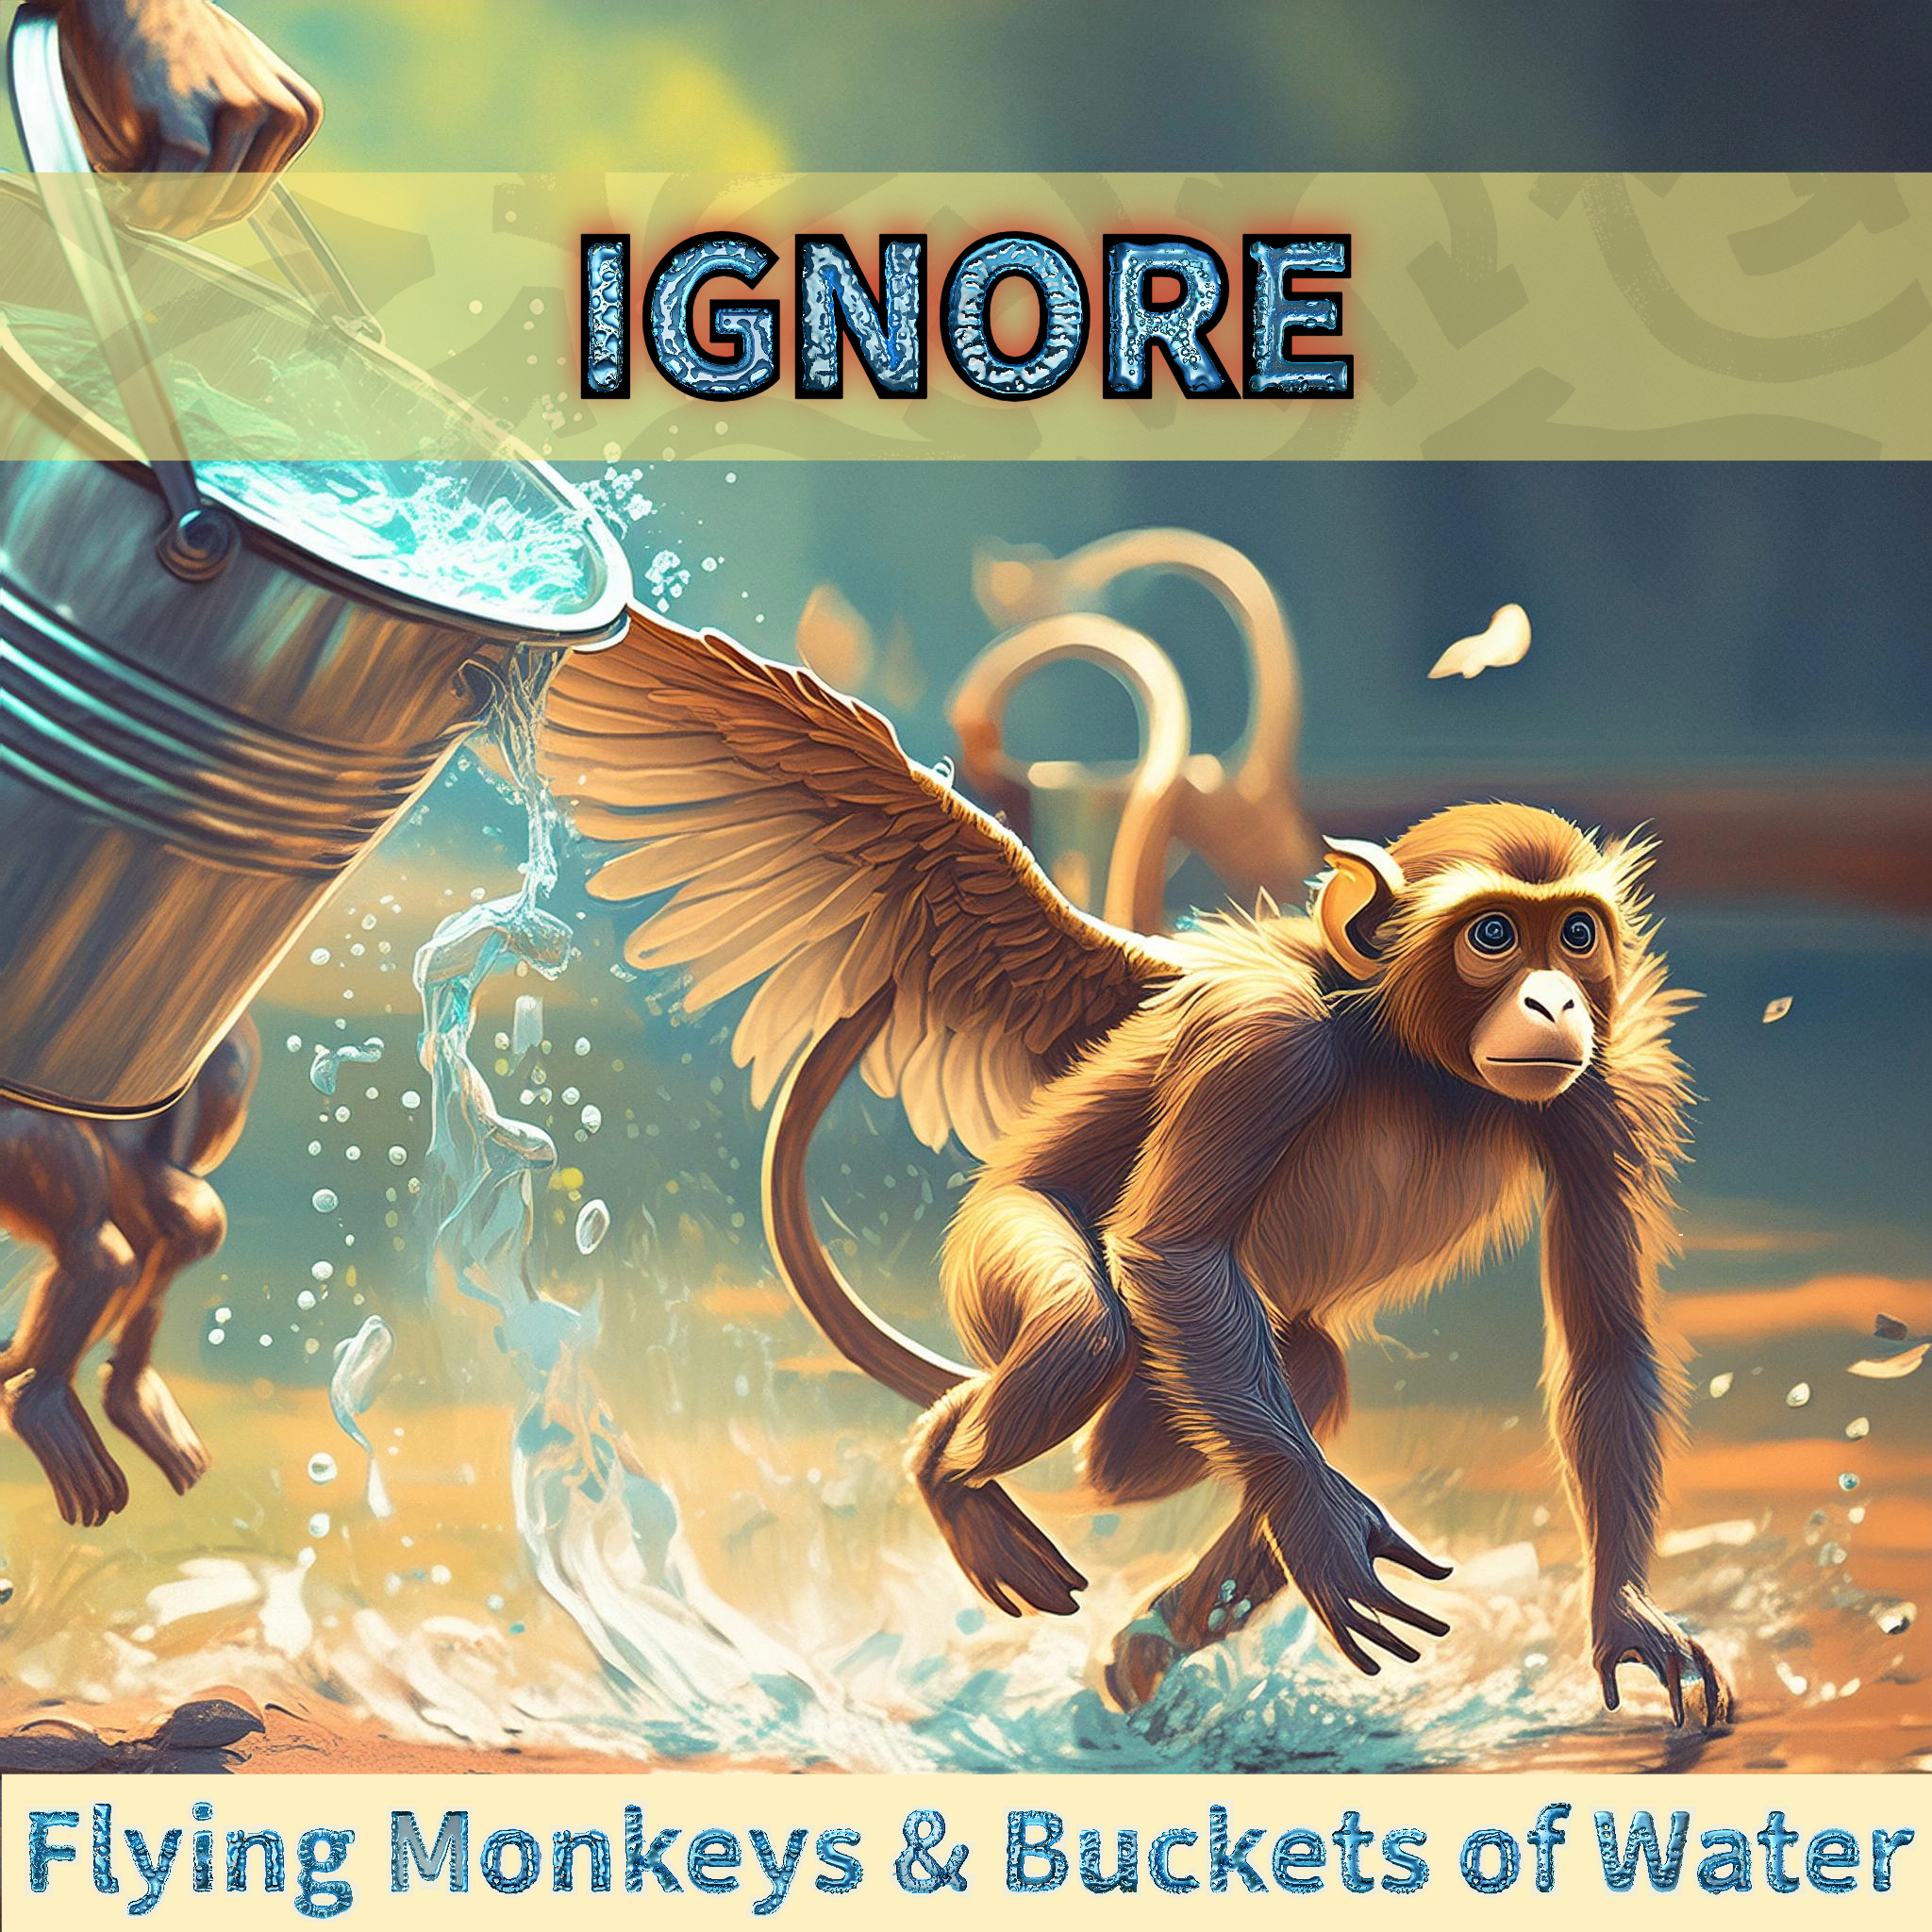 Flying Monkeys & Bucket of Water #1  - IGNORE